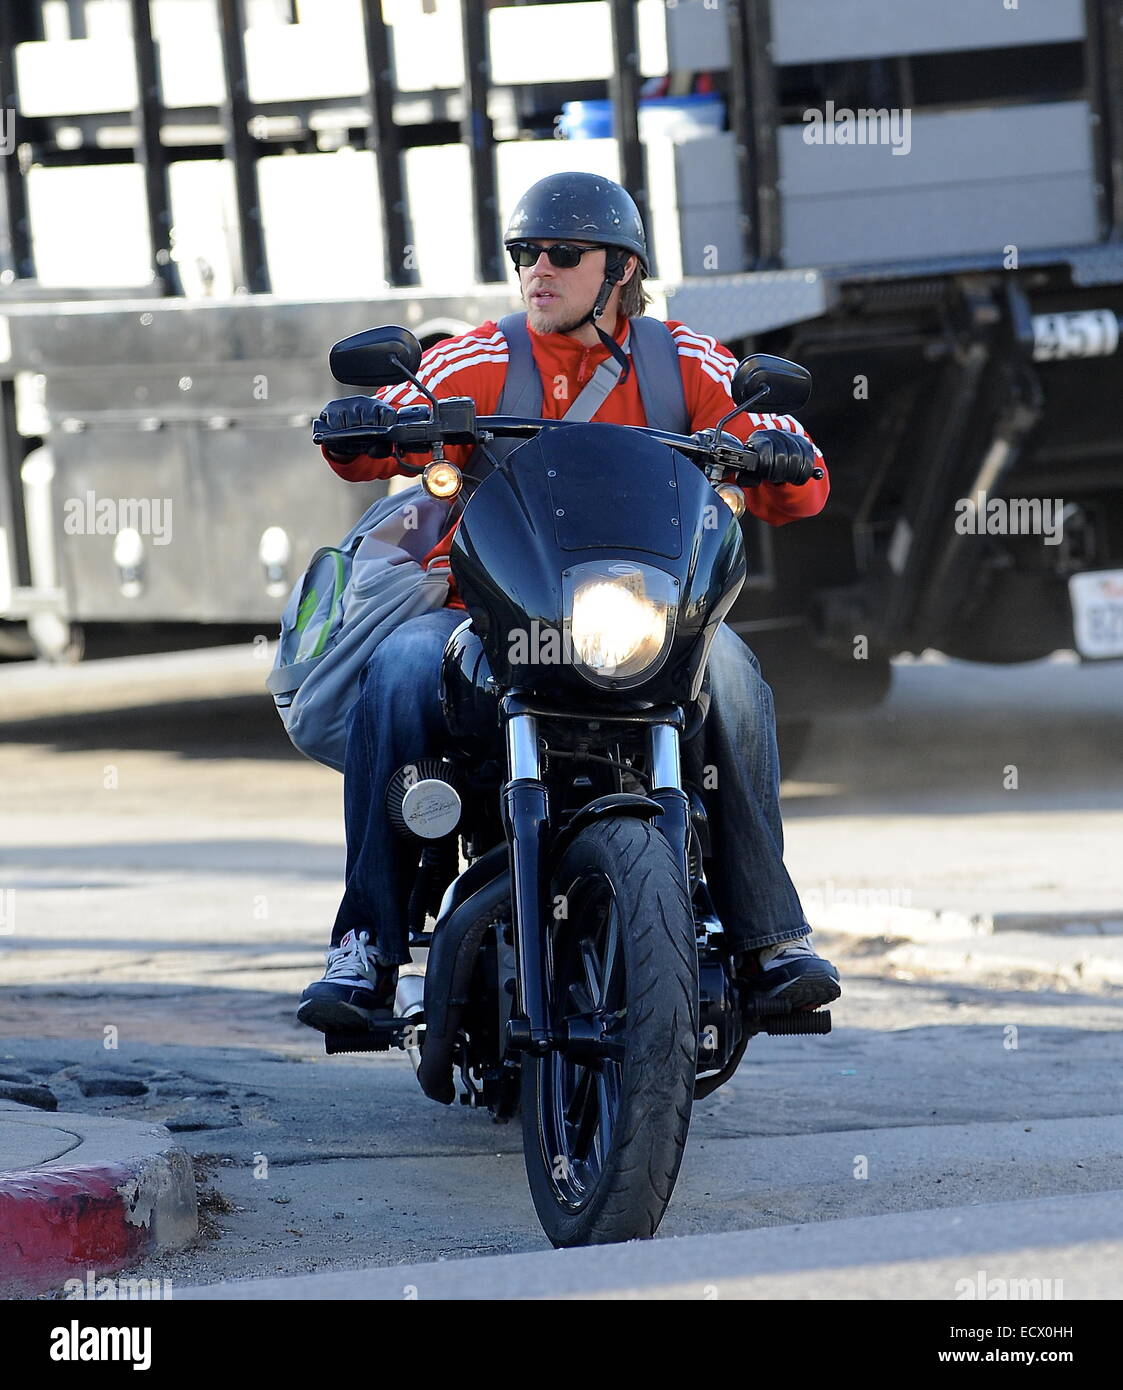 Charlie Hunnam hat Autogramme für die Erwartung von Fans unterschrieben,  als er mit seinem Harley Davidson Motorrad von zu Hause fährt, nachdem er  seine Hit-Show Son's Of Anarchy in der Innenstadt von